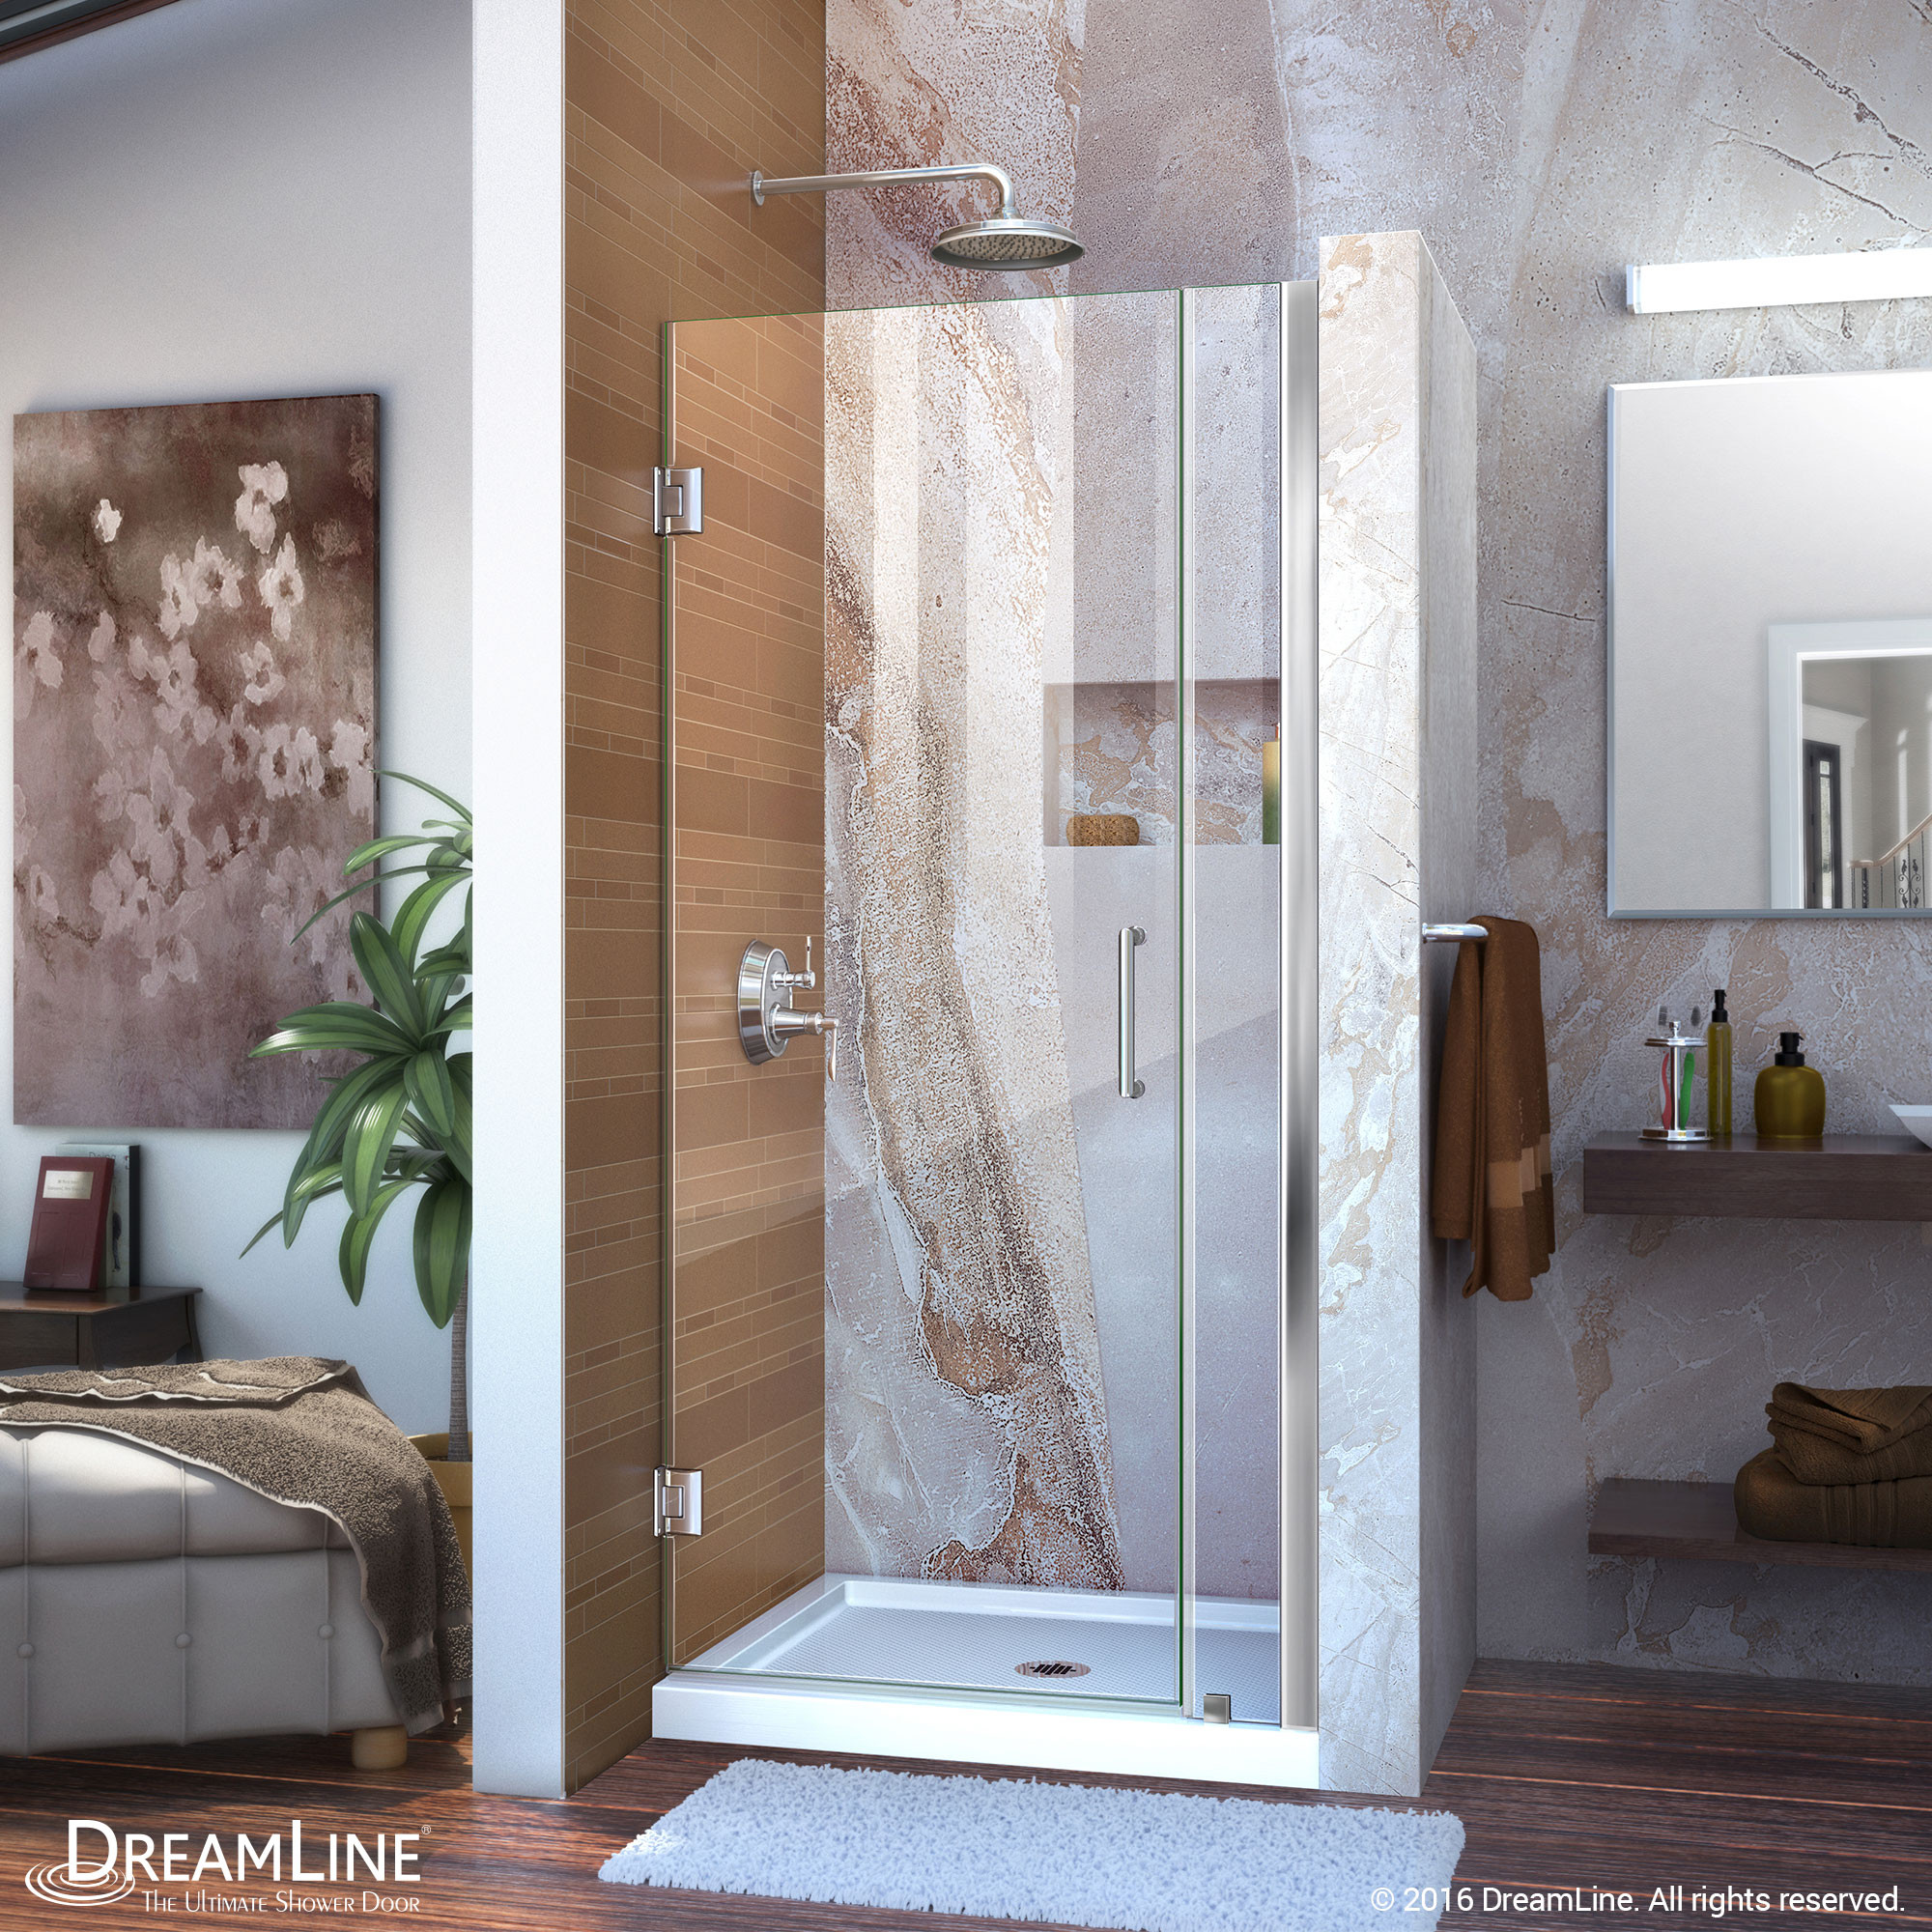 Dreamline SHDR-20317210-01 Chrome Frameless 31-32" Adjustable Shower Door